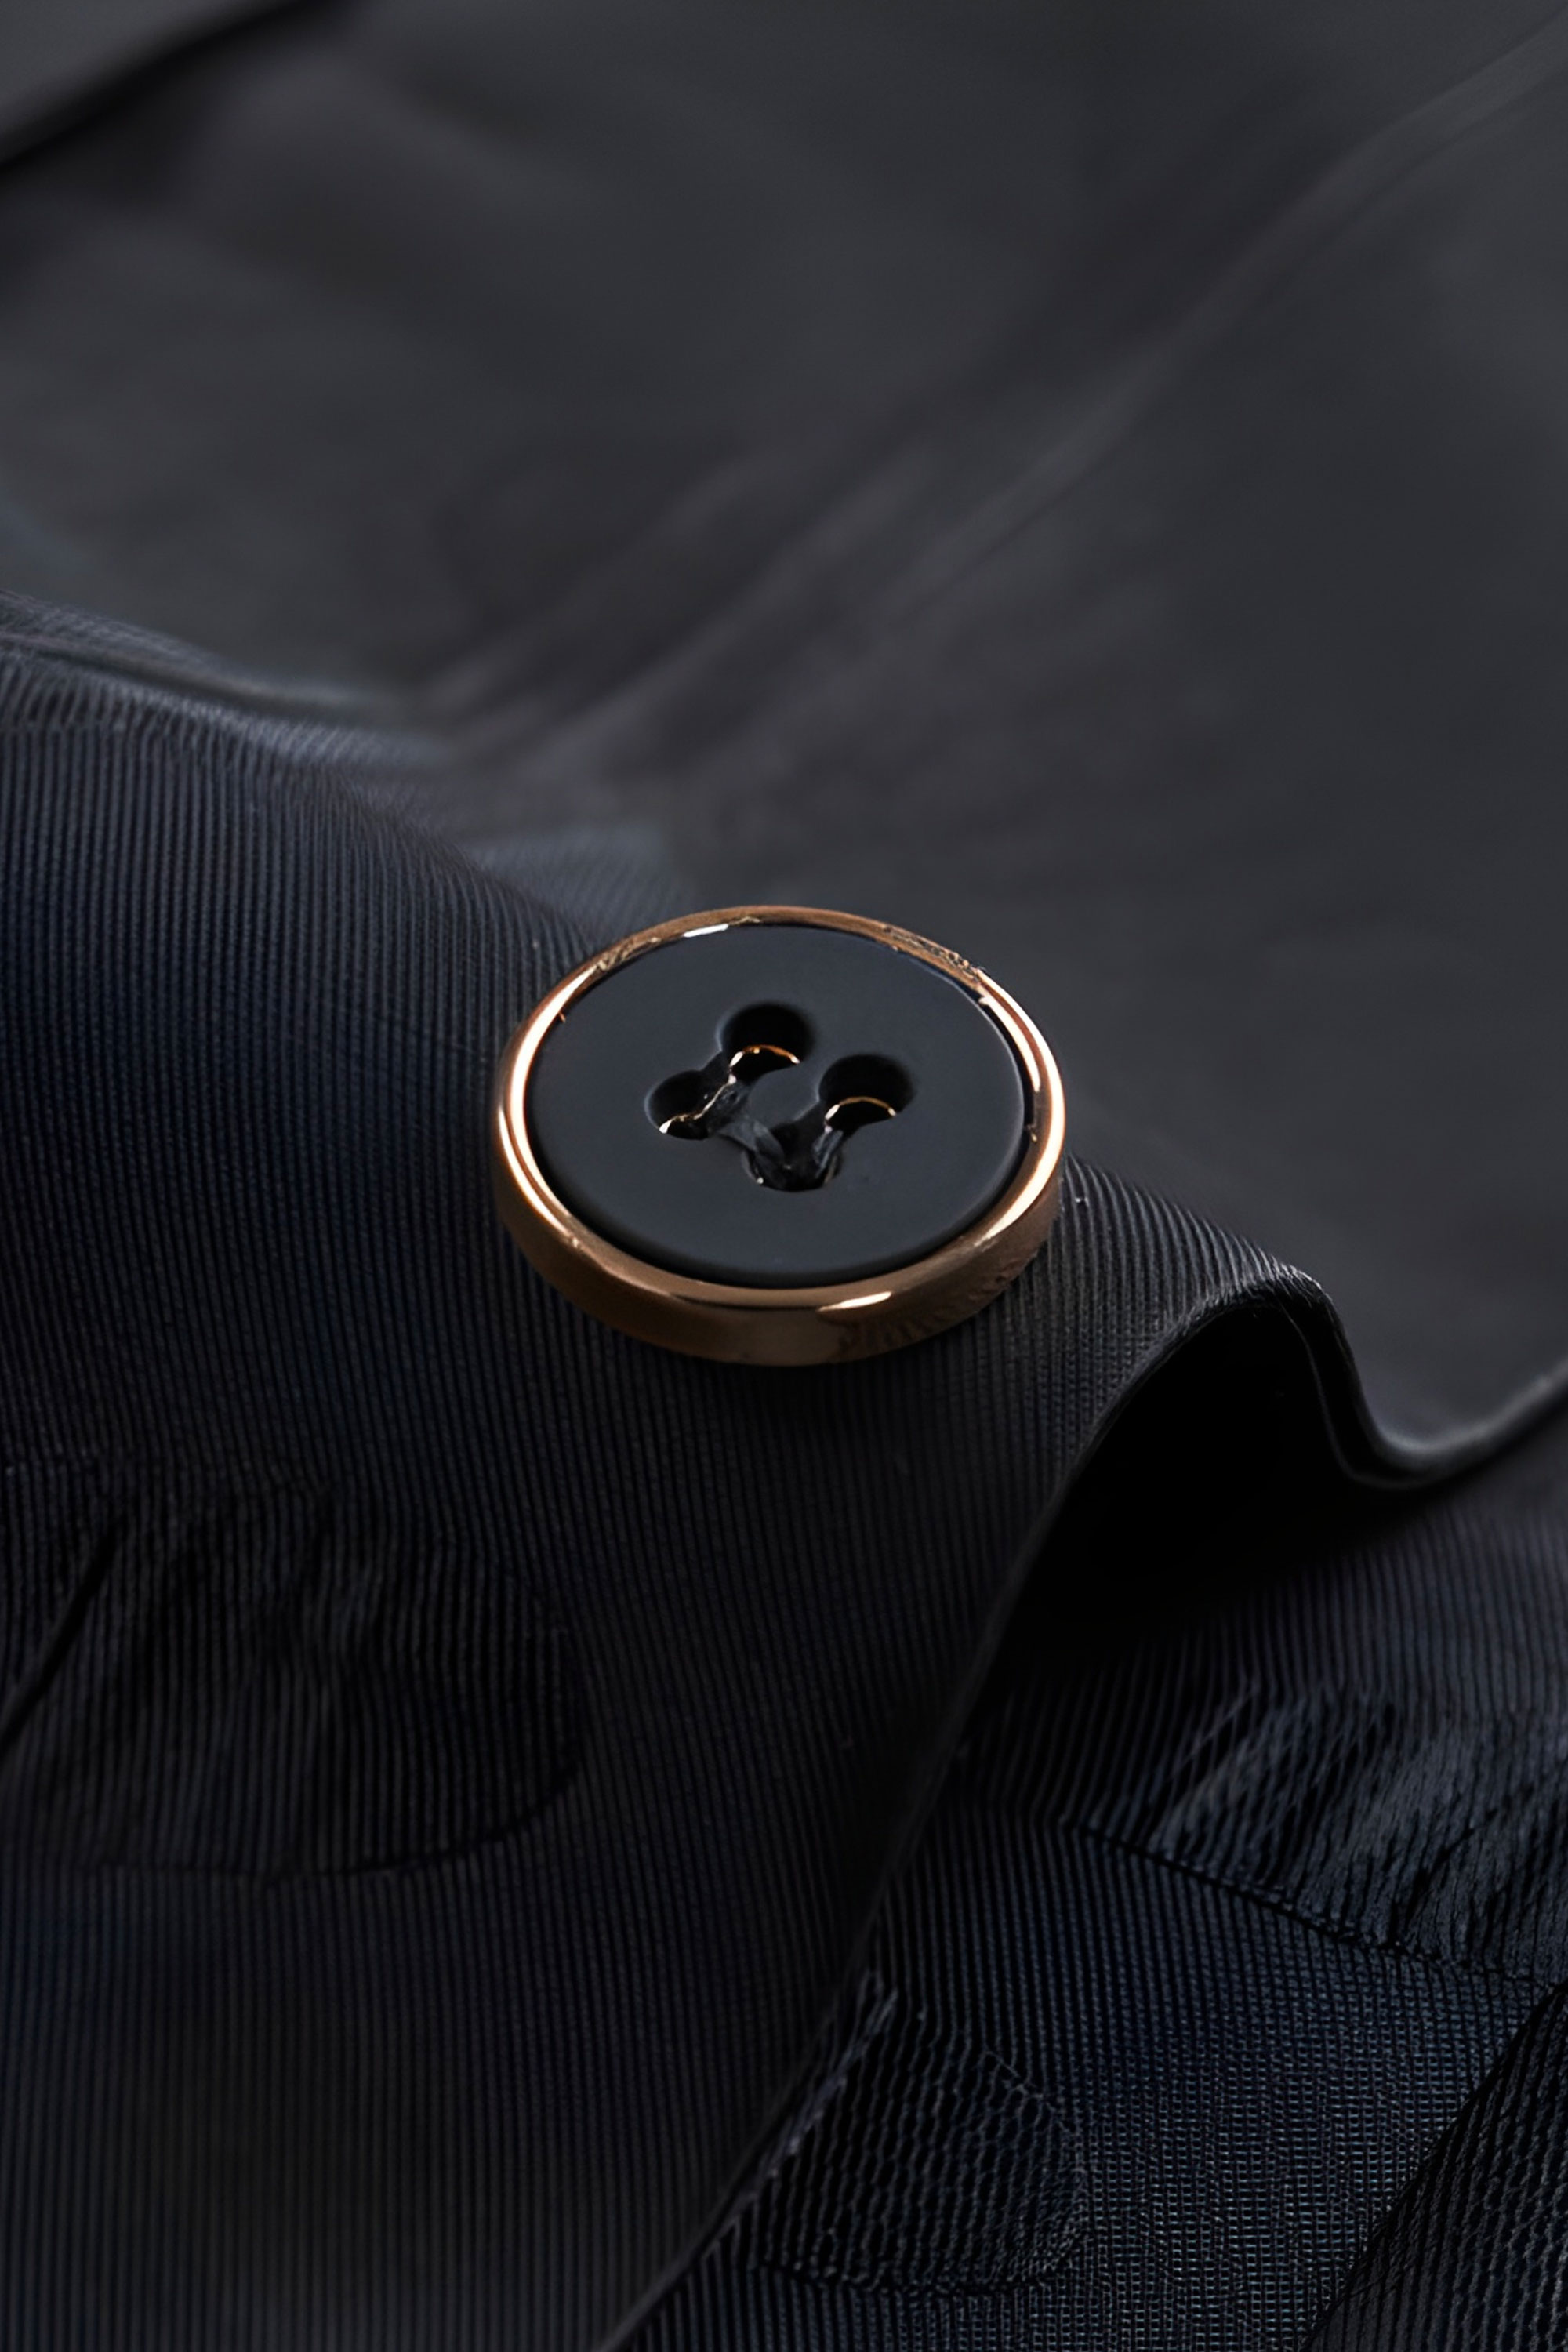 Black-Abstarct-Tuxedo-Button-from-Gentlemansguru.com